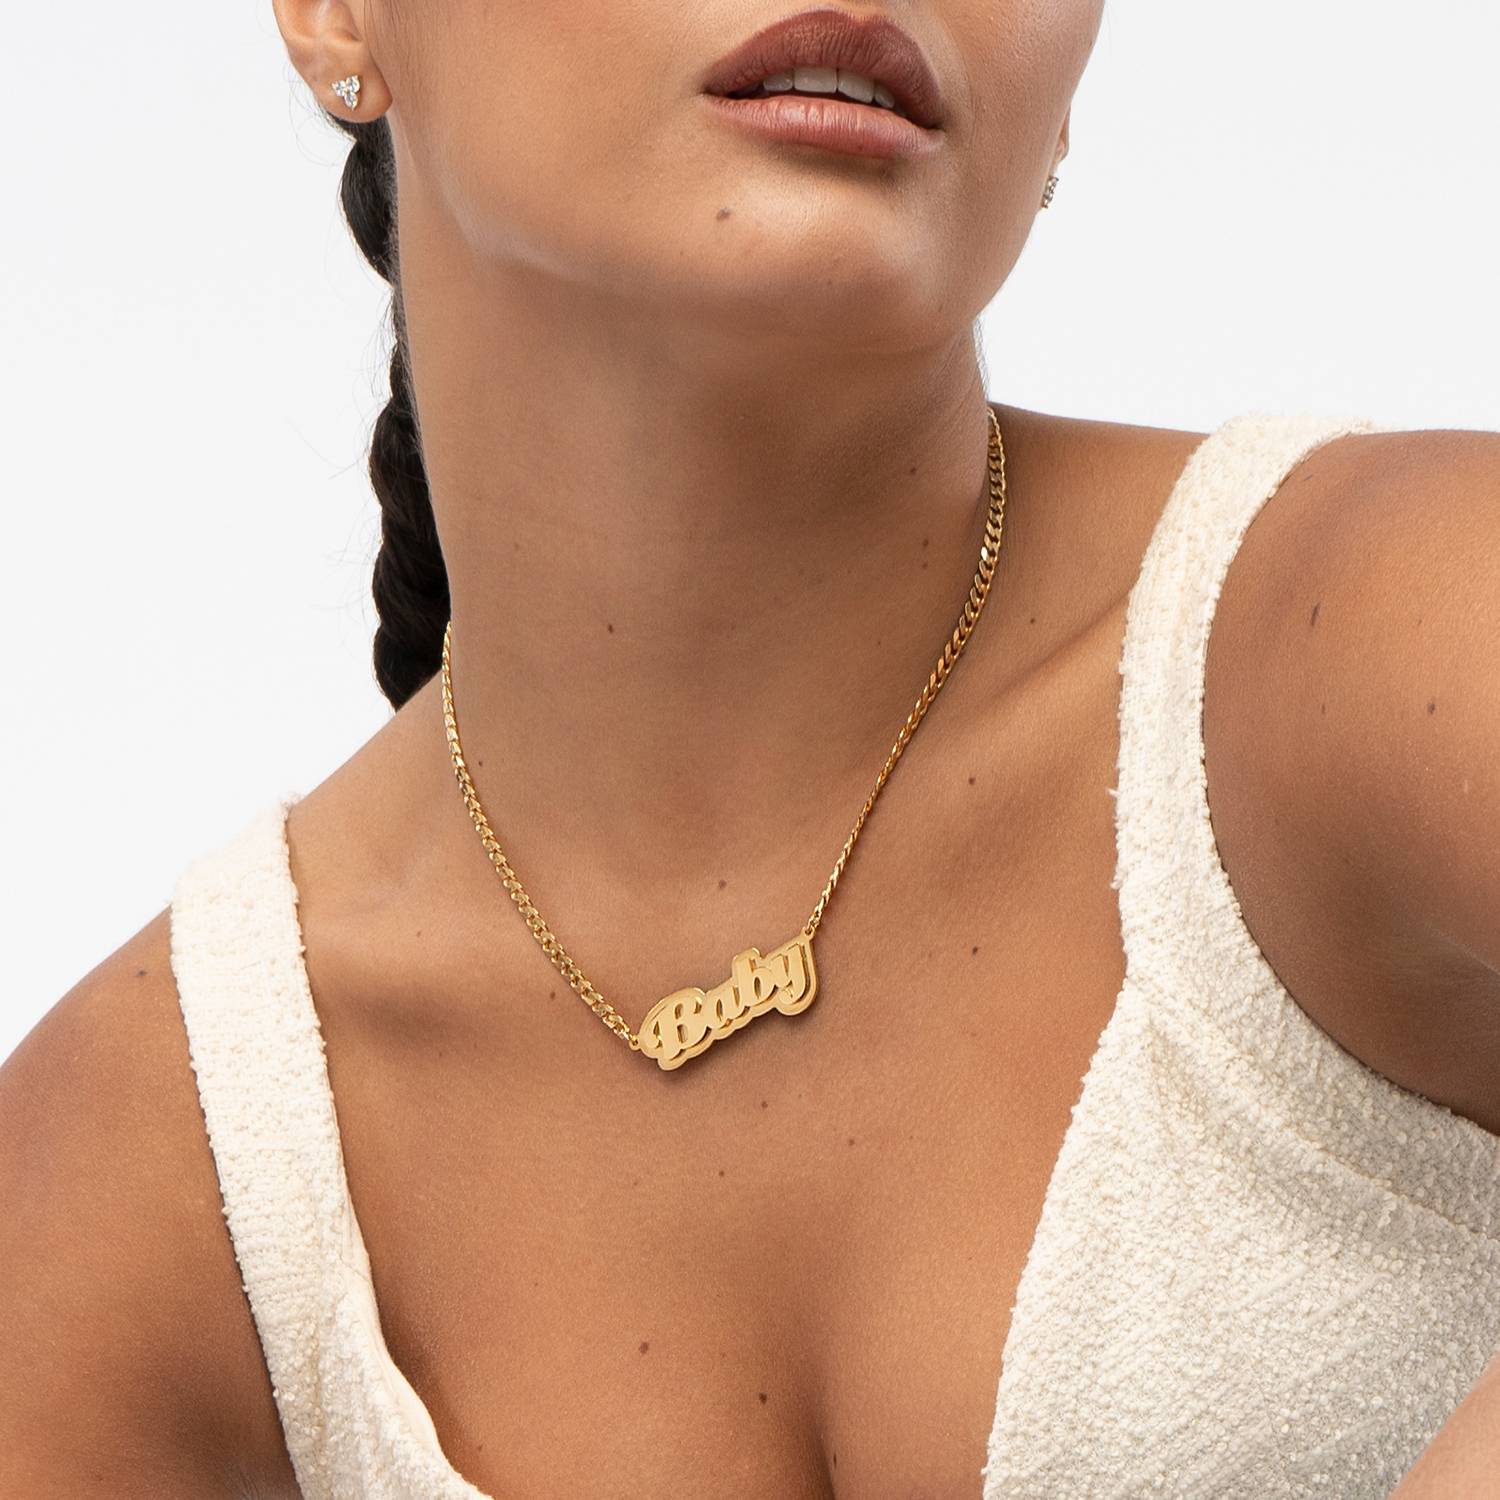 Collar con nombre Alexis efecto doble placa en Chapa de oro Vermeil de 18K-3 foto de producto